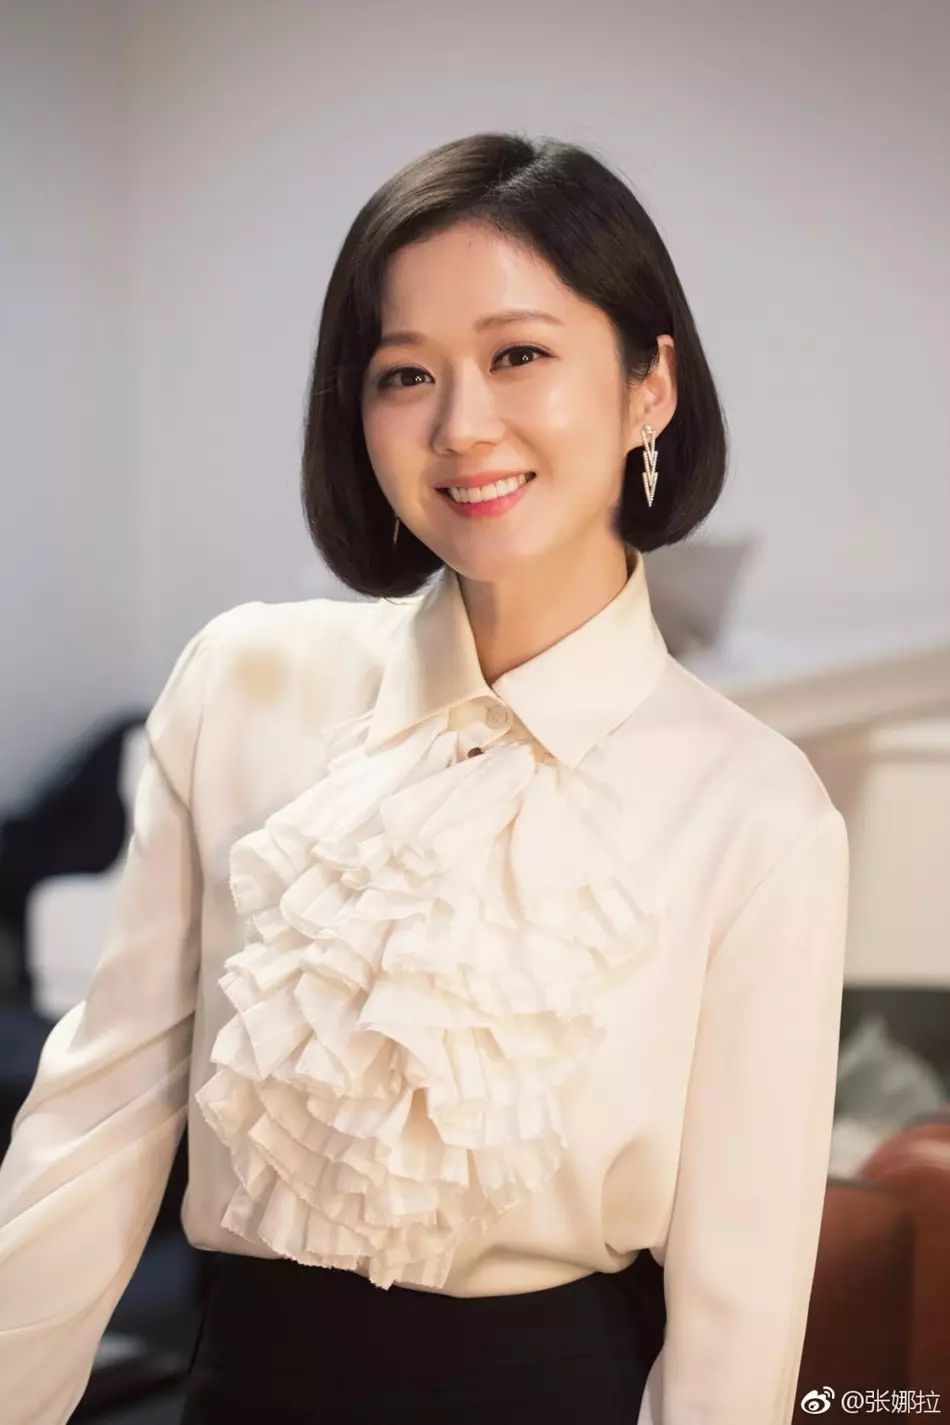 近日,韩国女演员张娜拉在忙于拍摄新剧《告白夫妇,还在微博上感谢